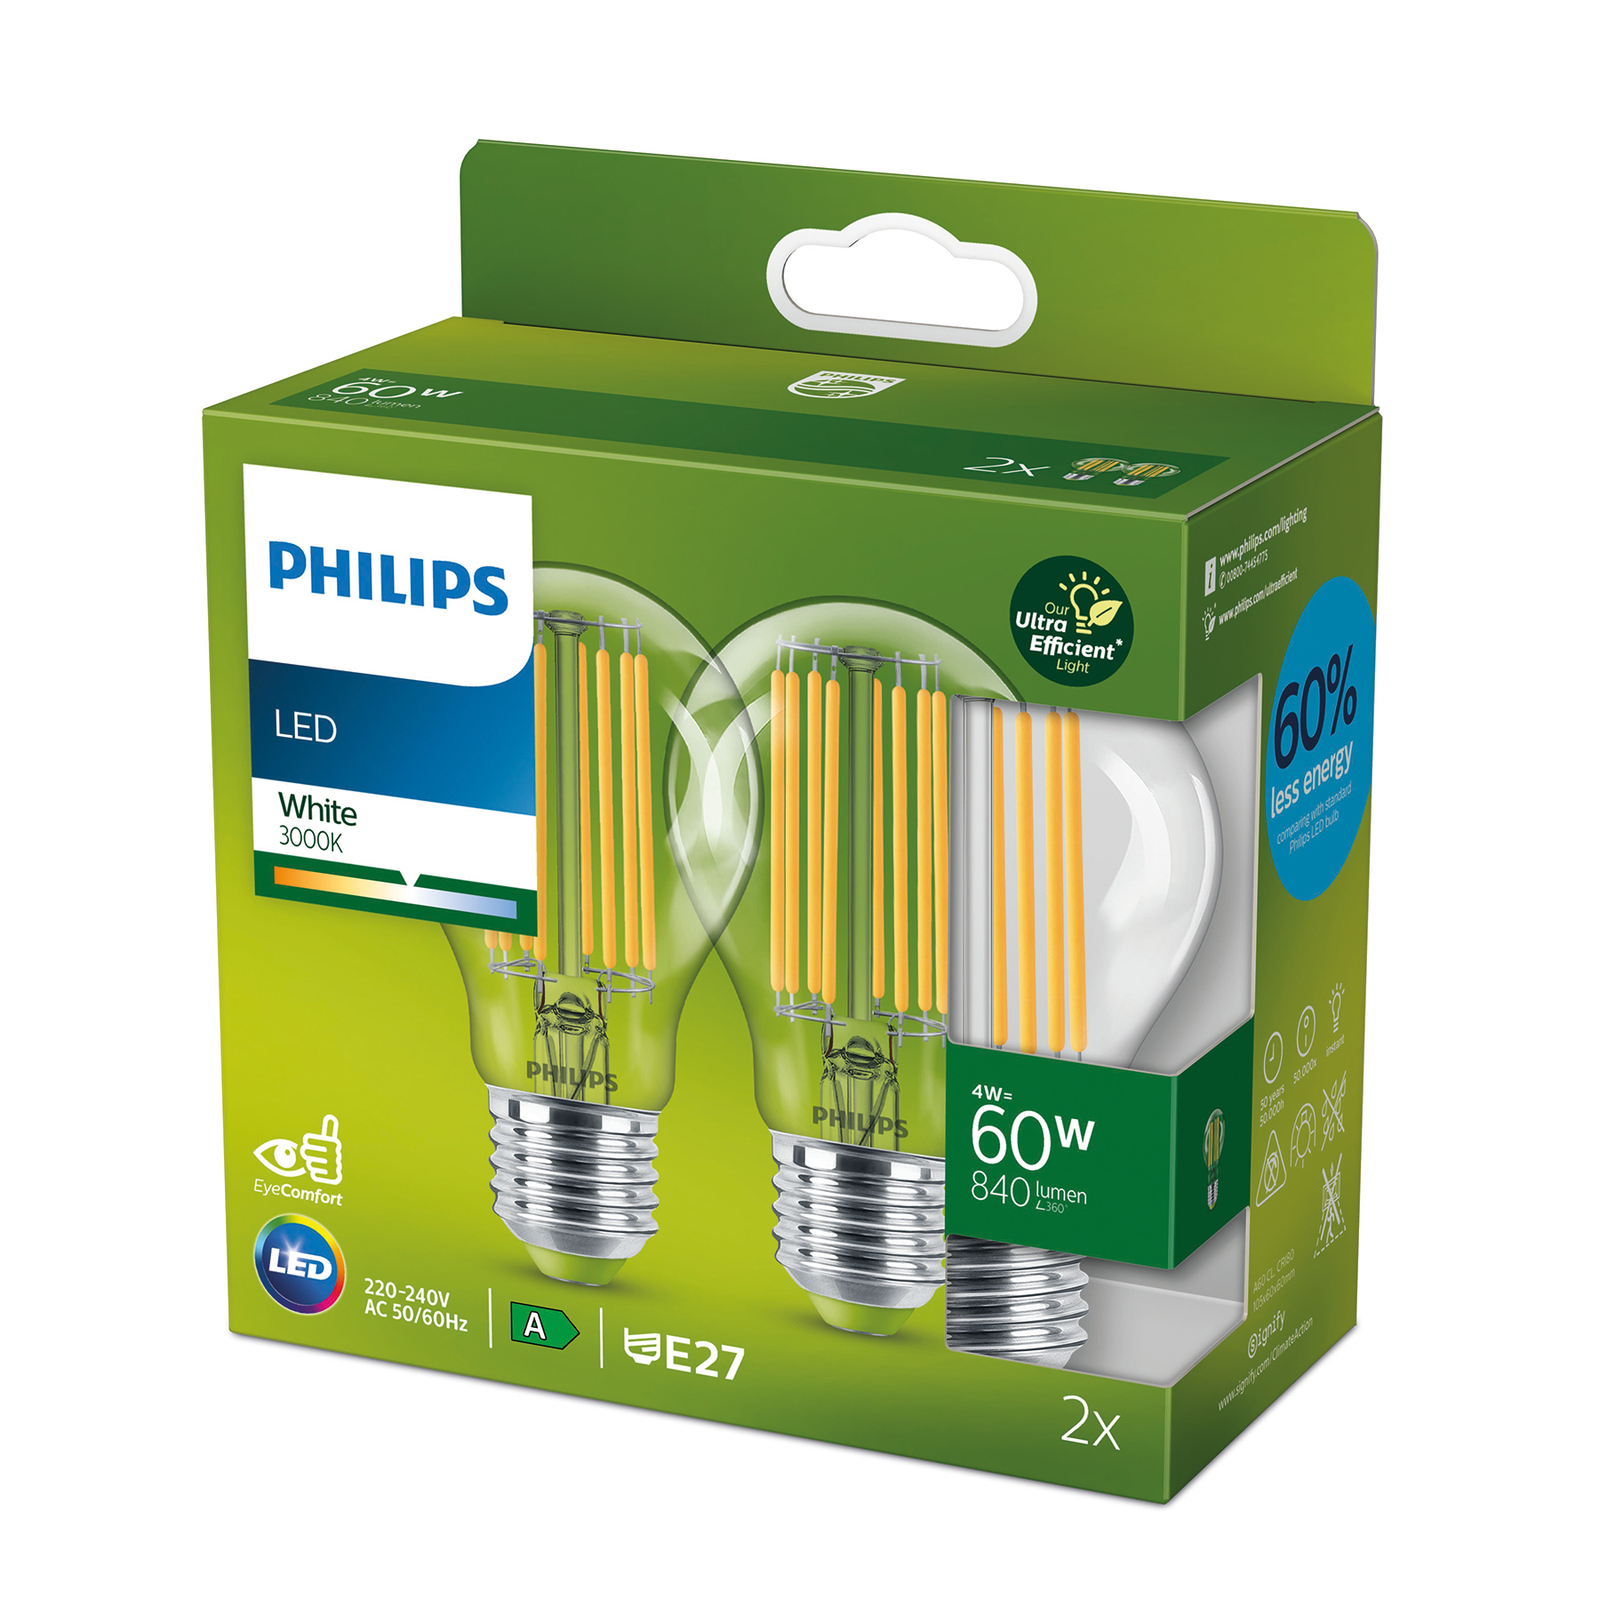 Philips LED E27 A60 4W 840lm trasparente 3.000K 2x